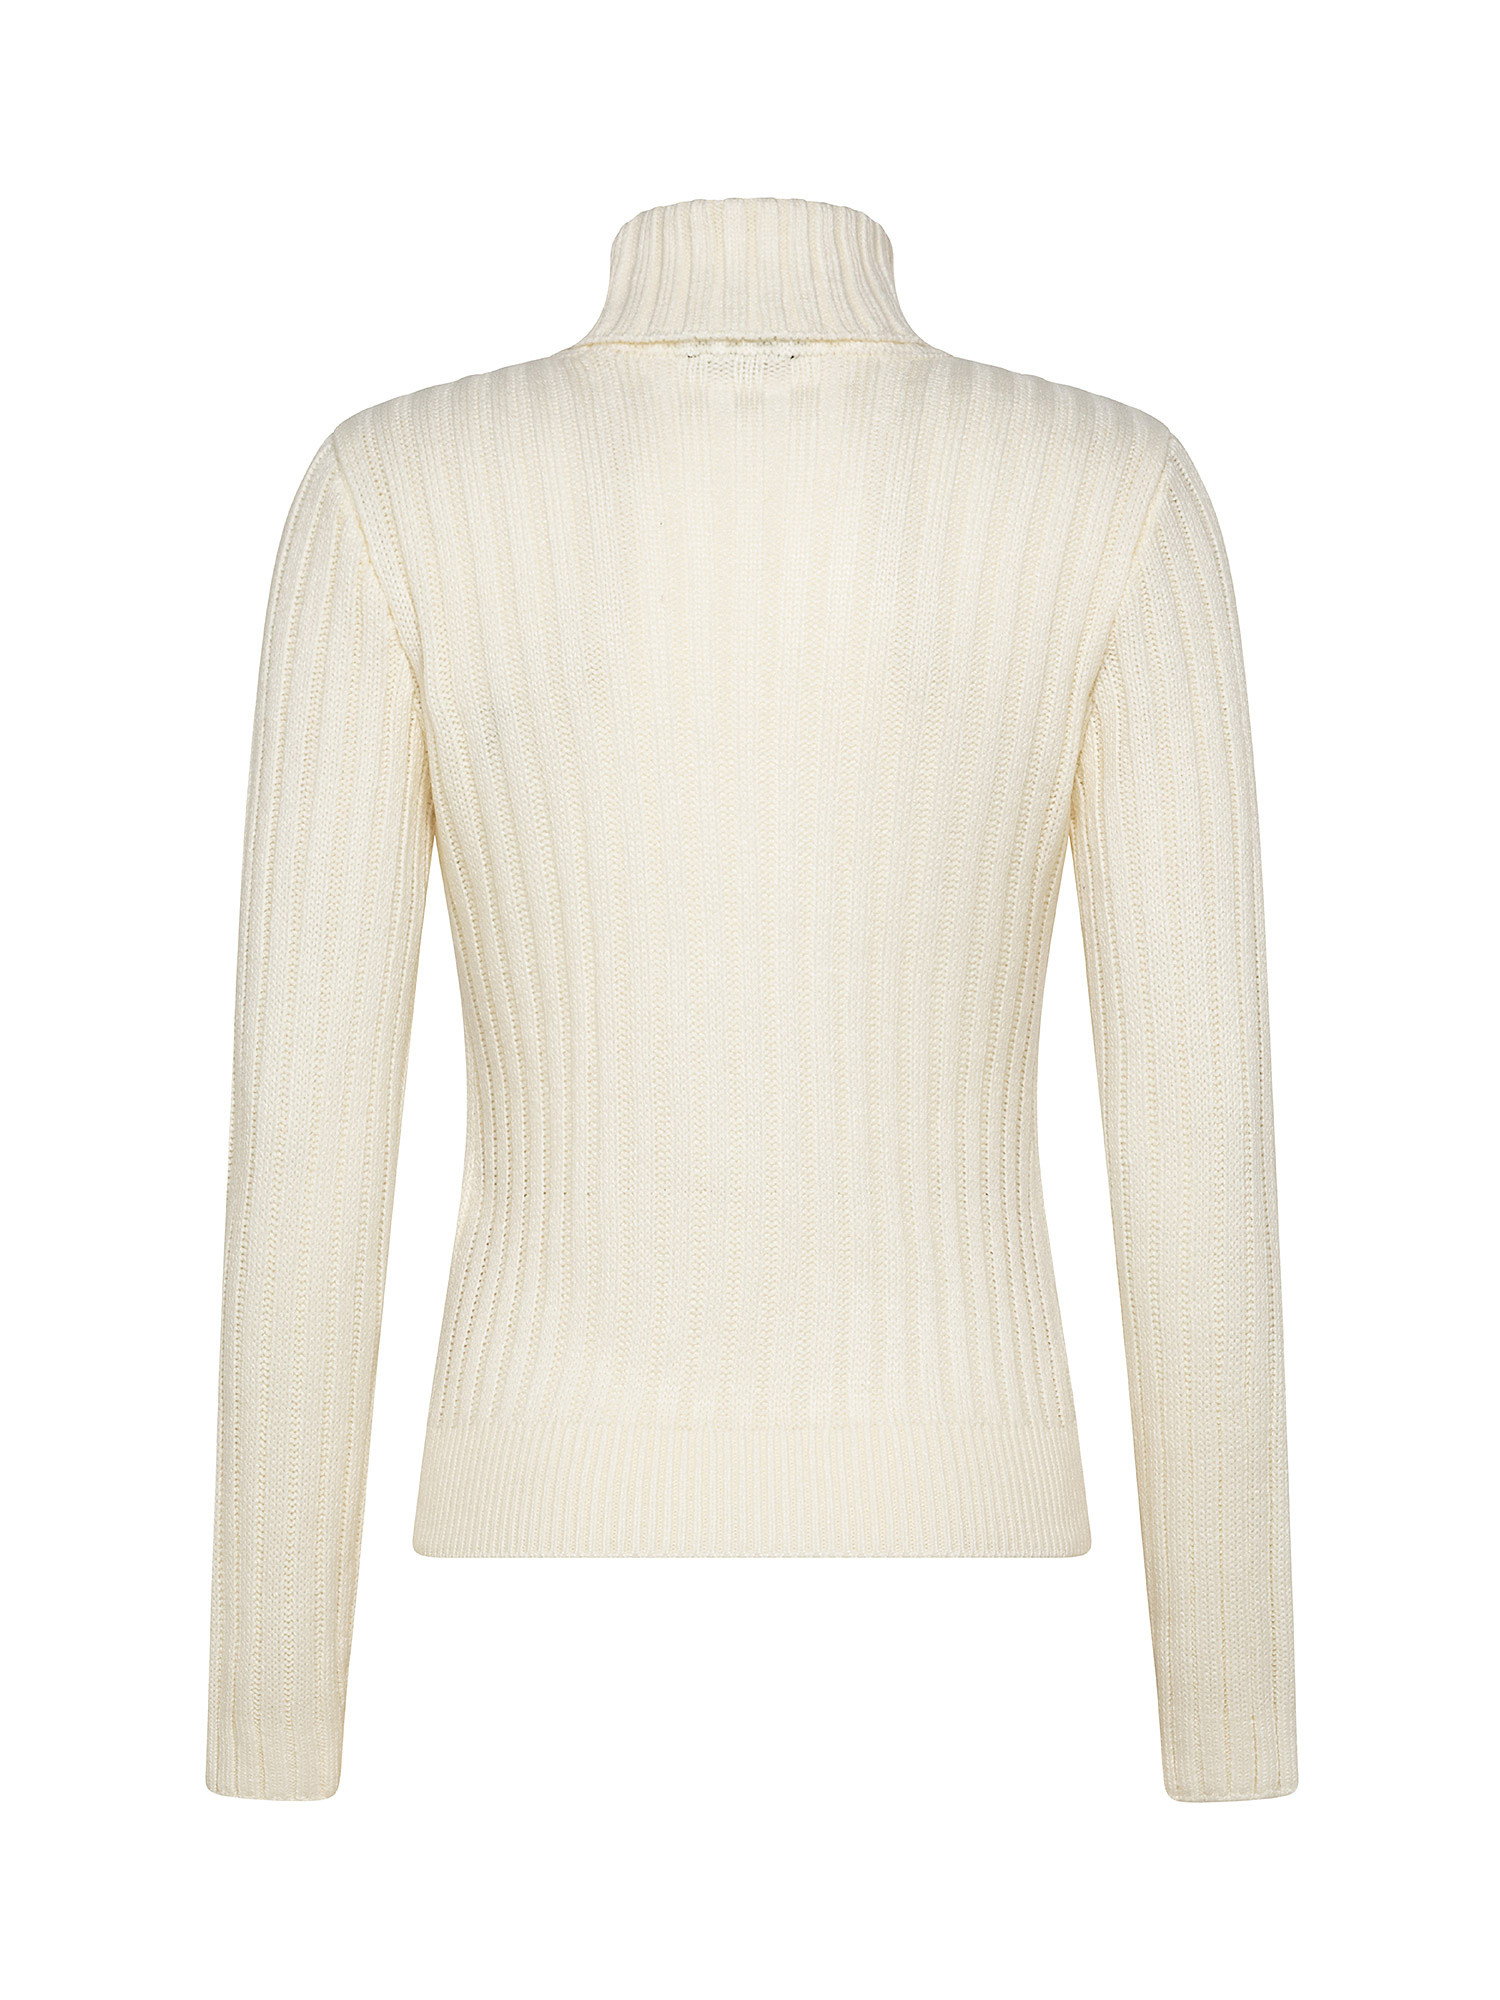 Turtleneck fringe front sweater, White Ivory, large image number 1